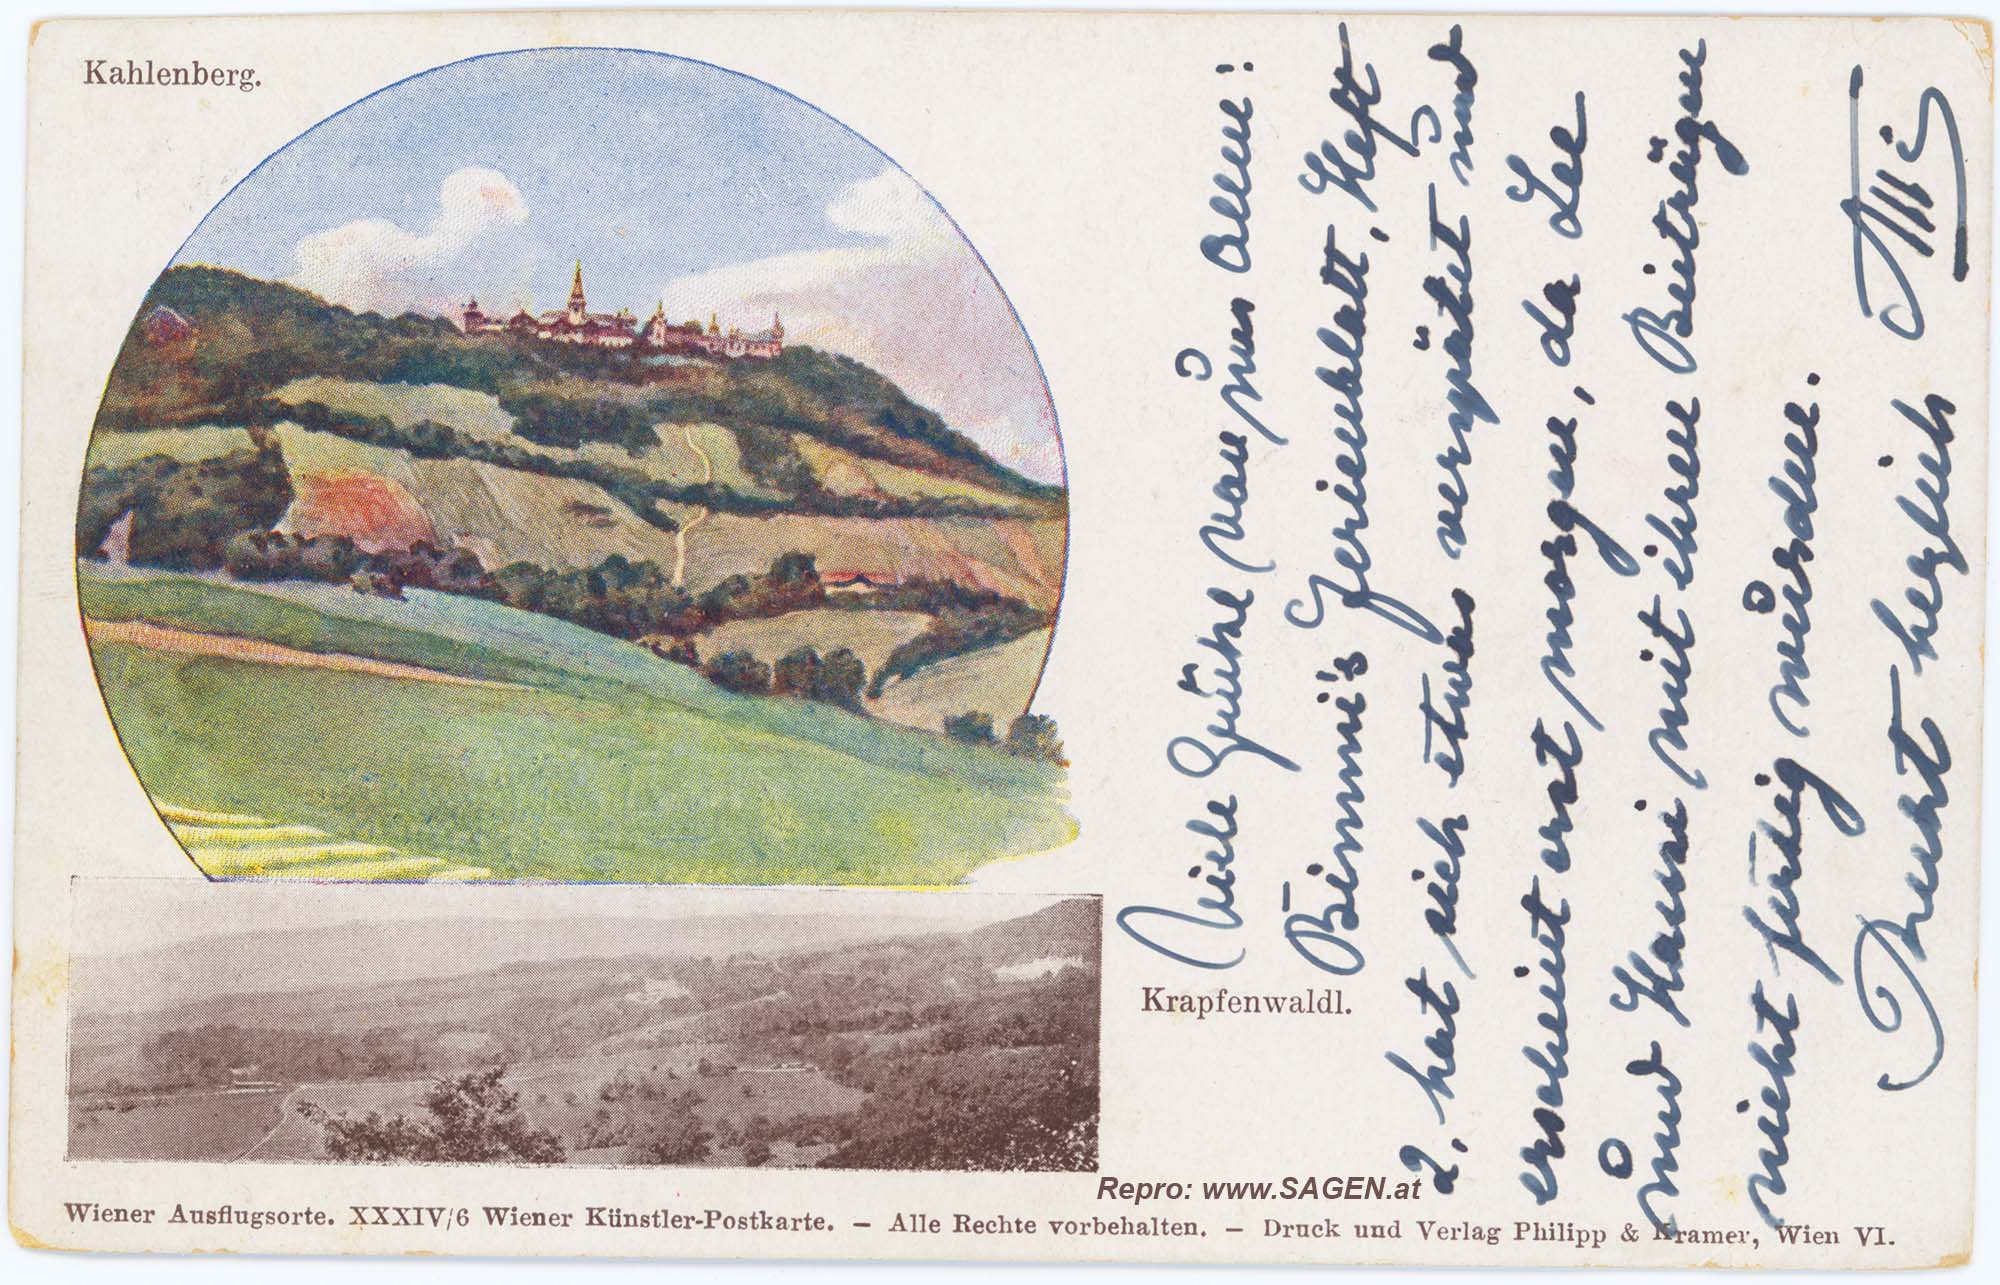 Wien, Kahlenberg und Krapfenwaldl um 1900